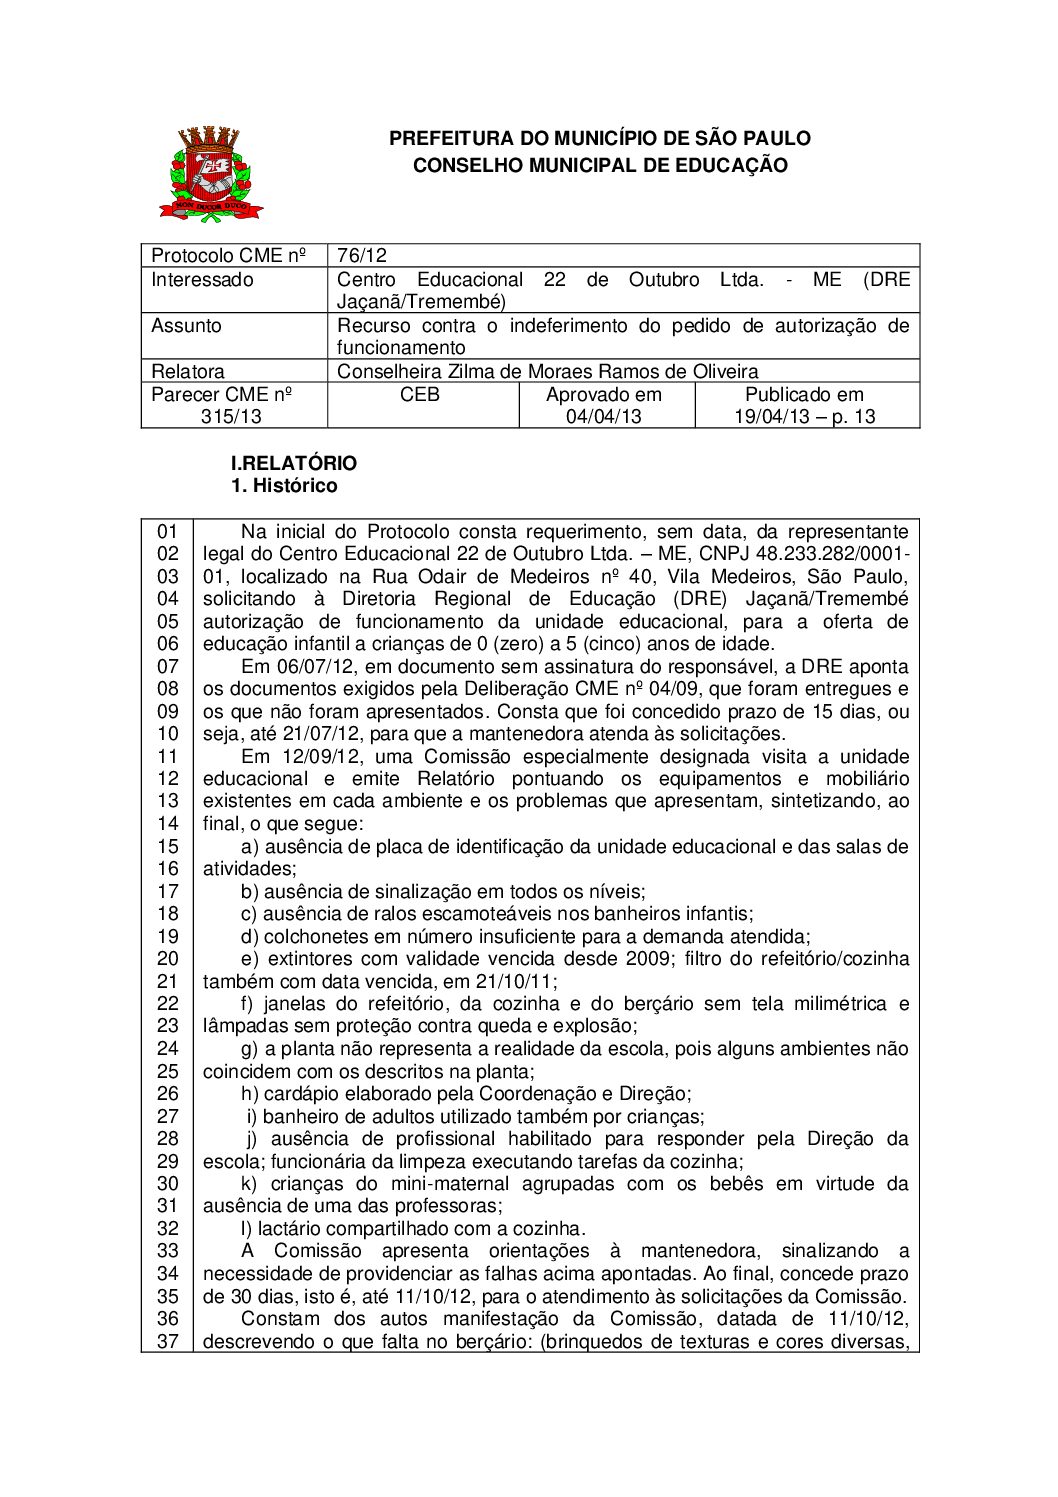 Parecer CME nº 315/2013 - Centro Educacional 22 de Outubro Ltda ME (DRE Jaçanã/Tremembé) - Recurso contra o indeferimento do pedido de autorização de funcionamento 